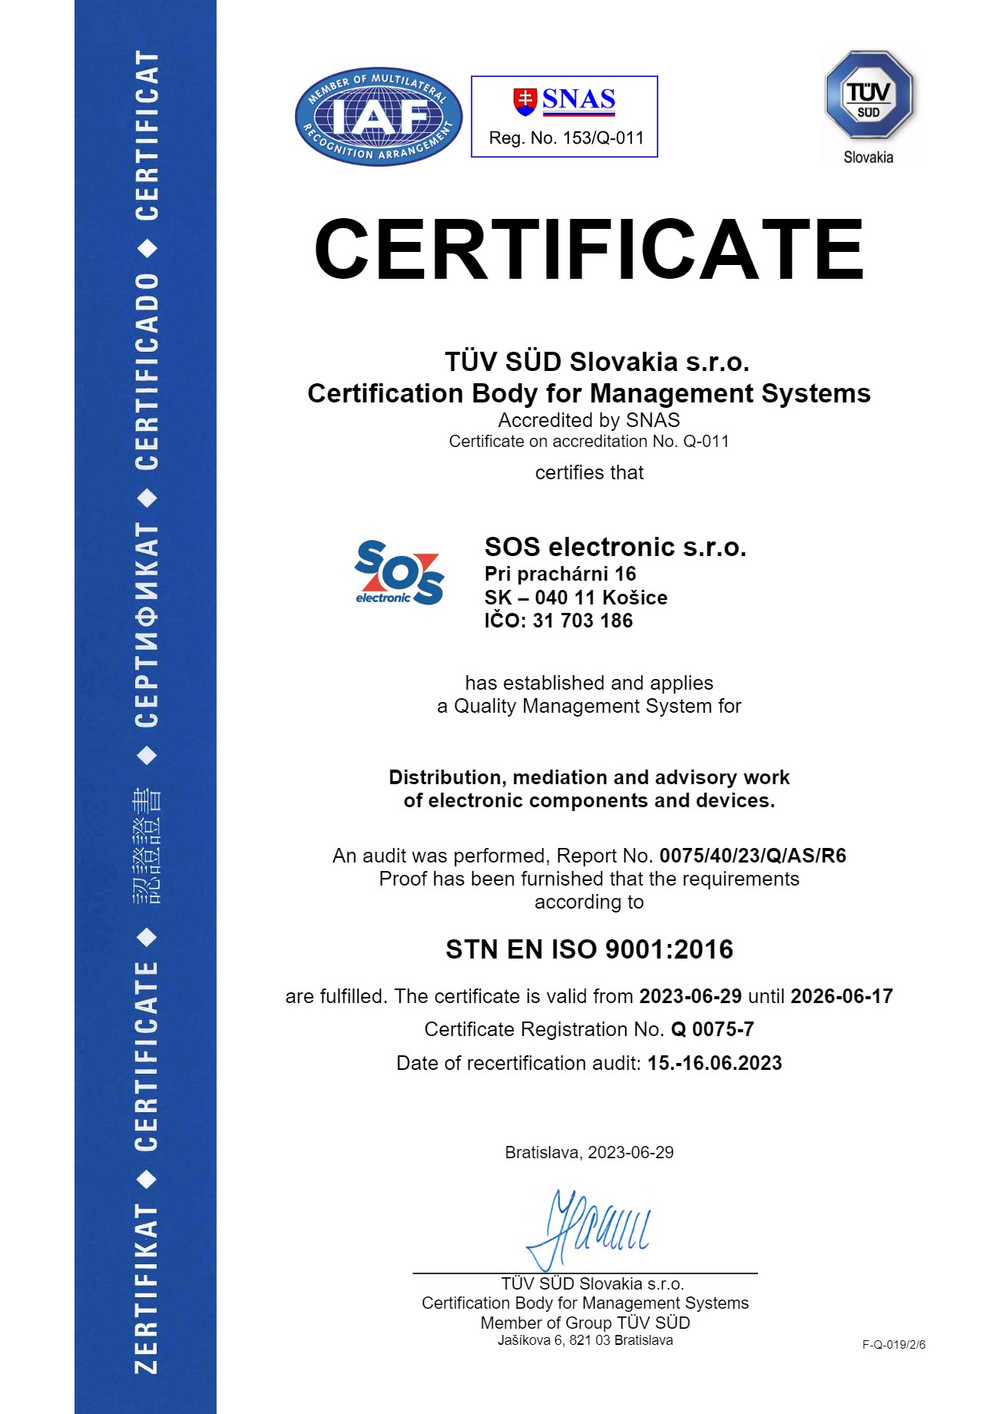 Certifikát ISO 9001 pre nás znamená viac ako len dodržiavanie predpisov